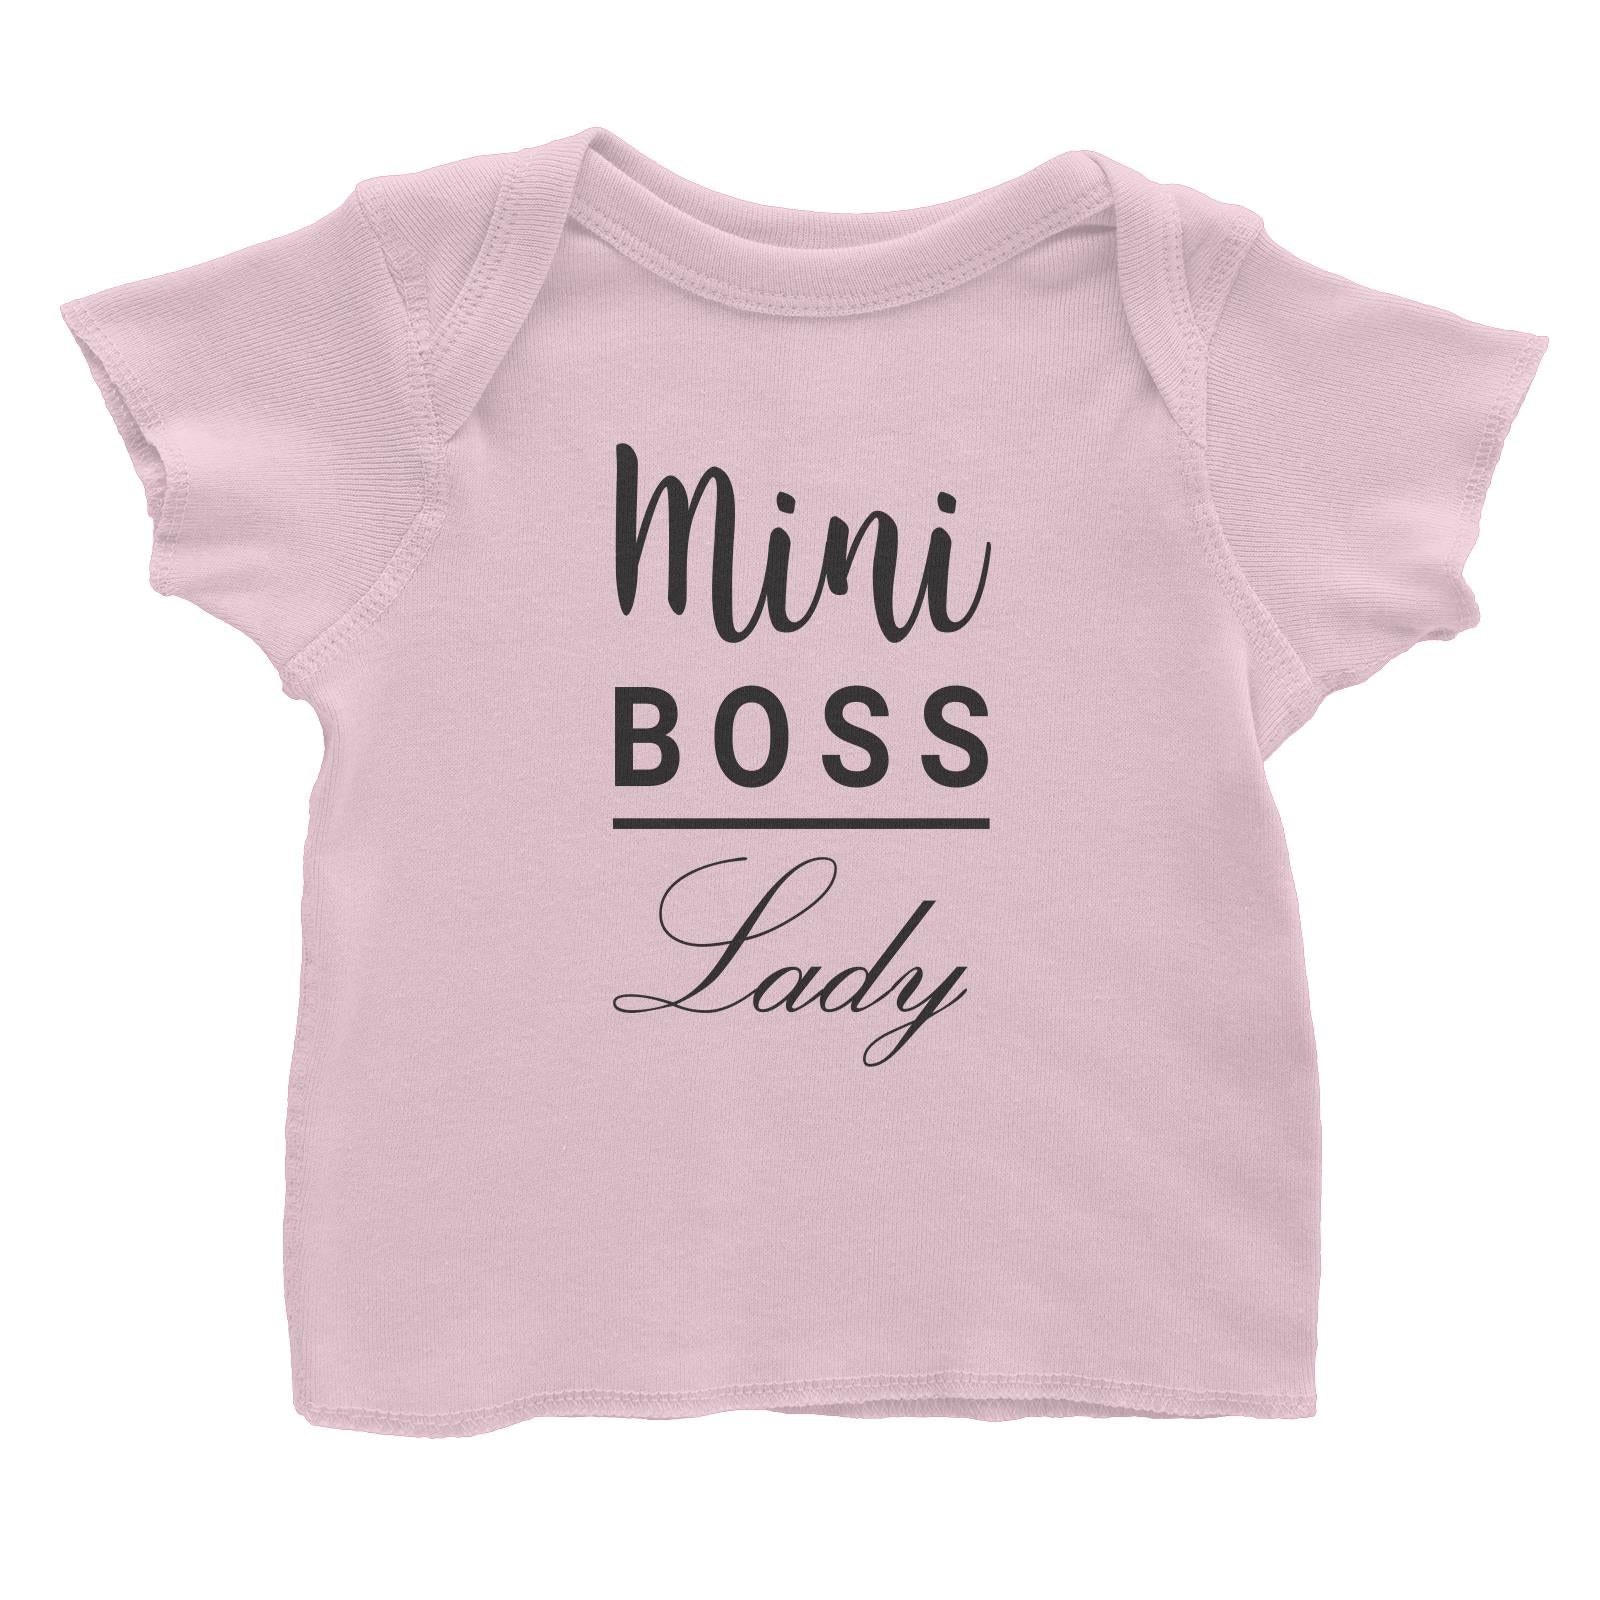 Mini Boss Lady Baby T-Shirt  Matching Family